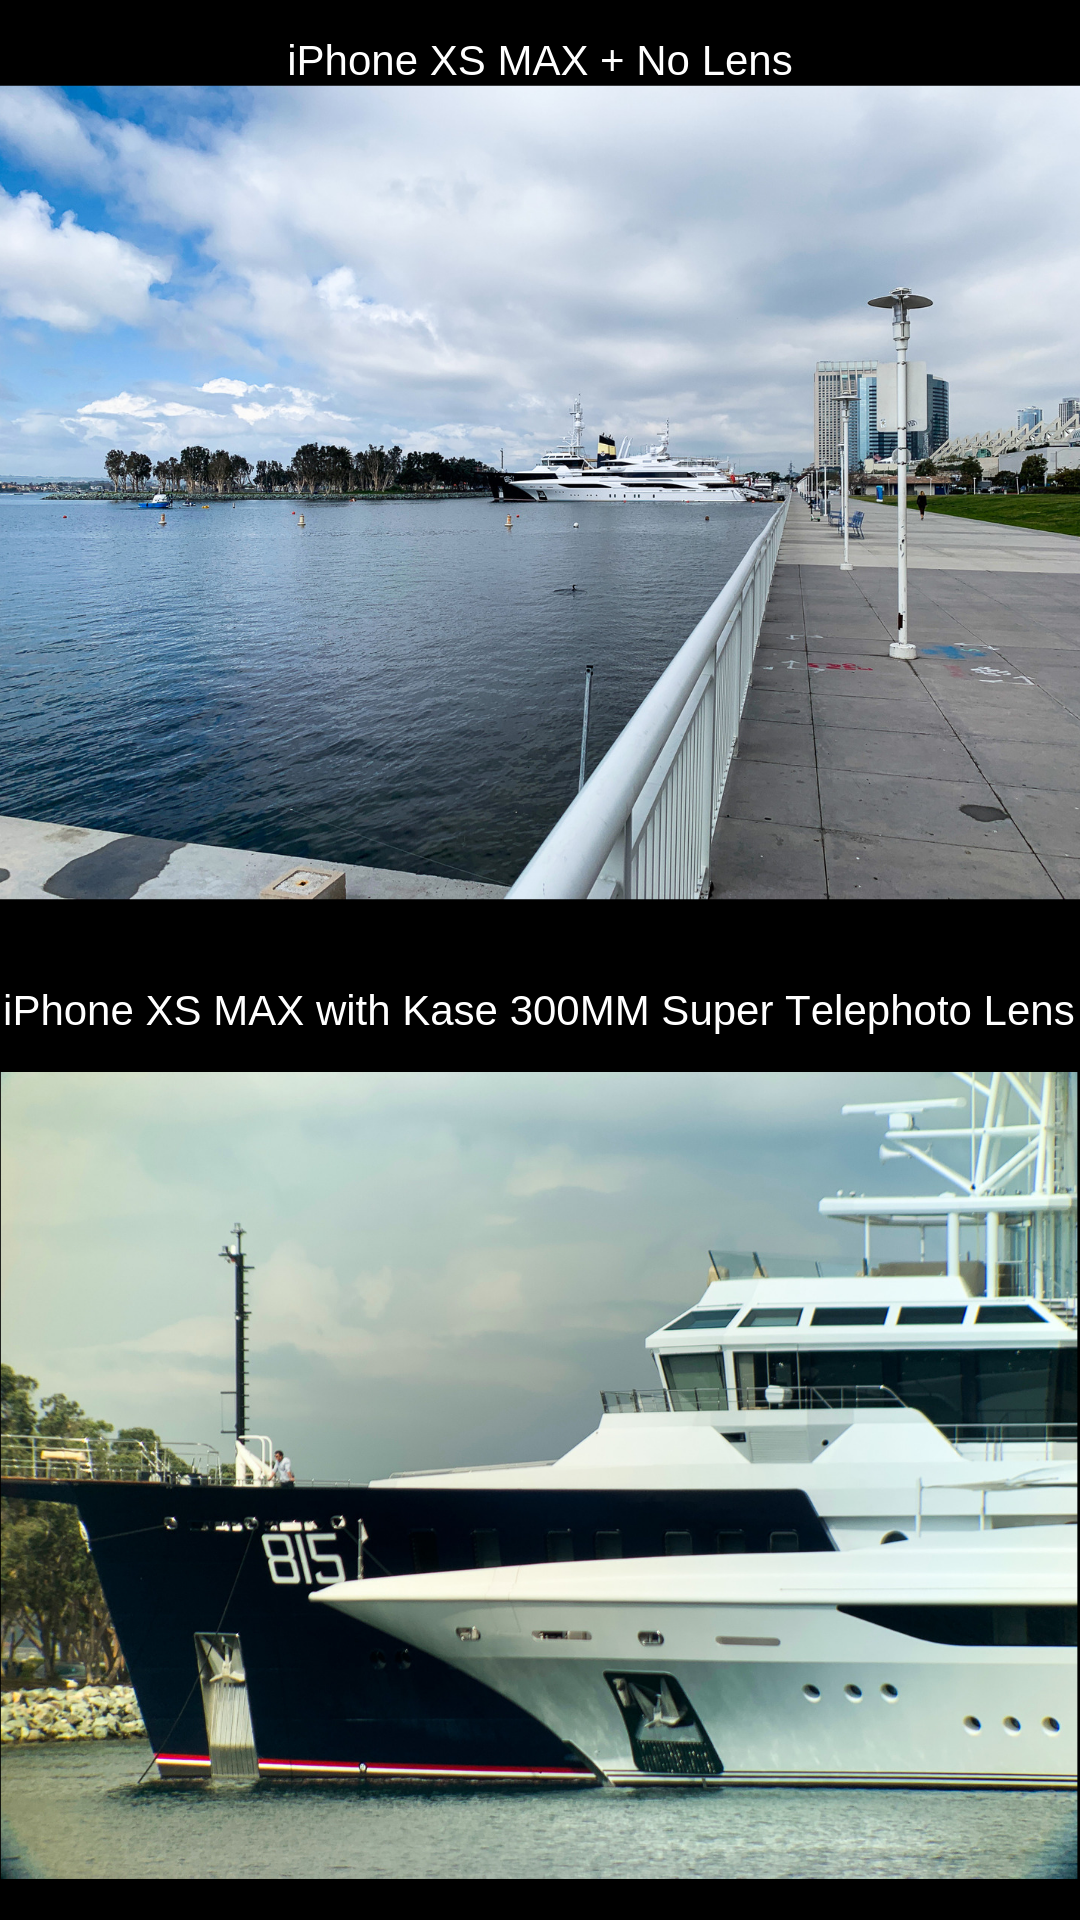 Kase 300MM Super Telephoto Lens